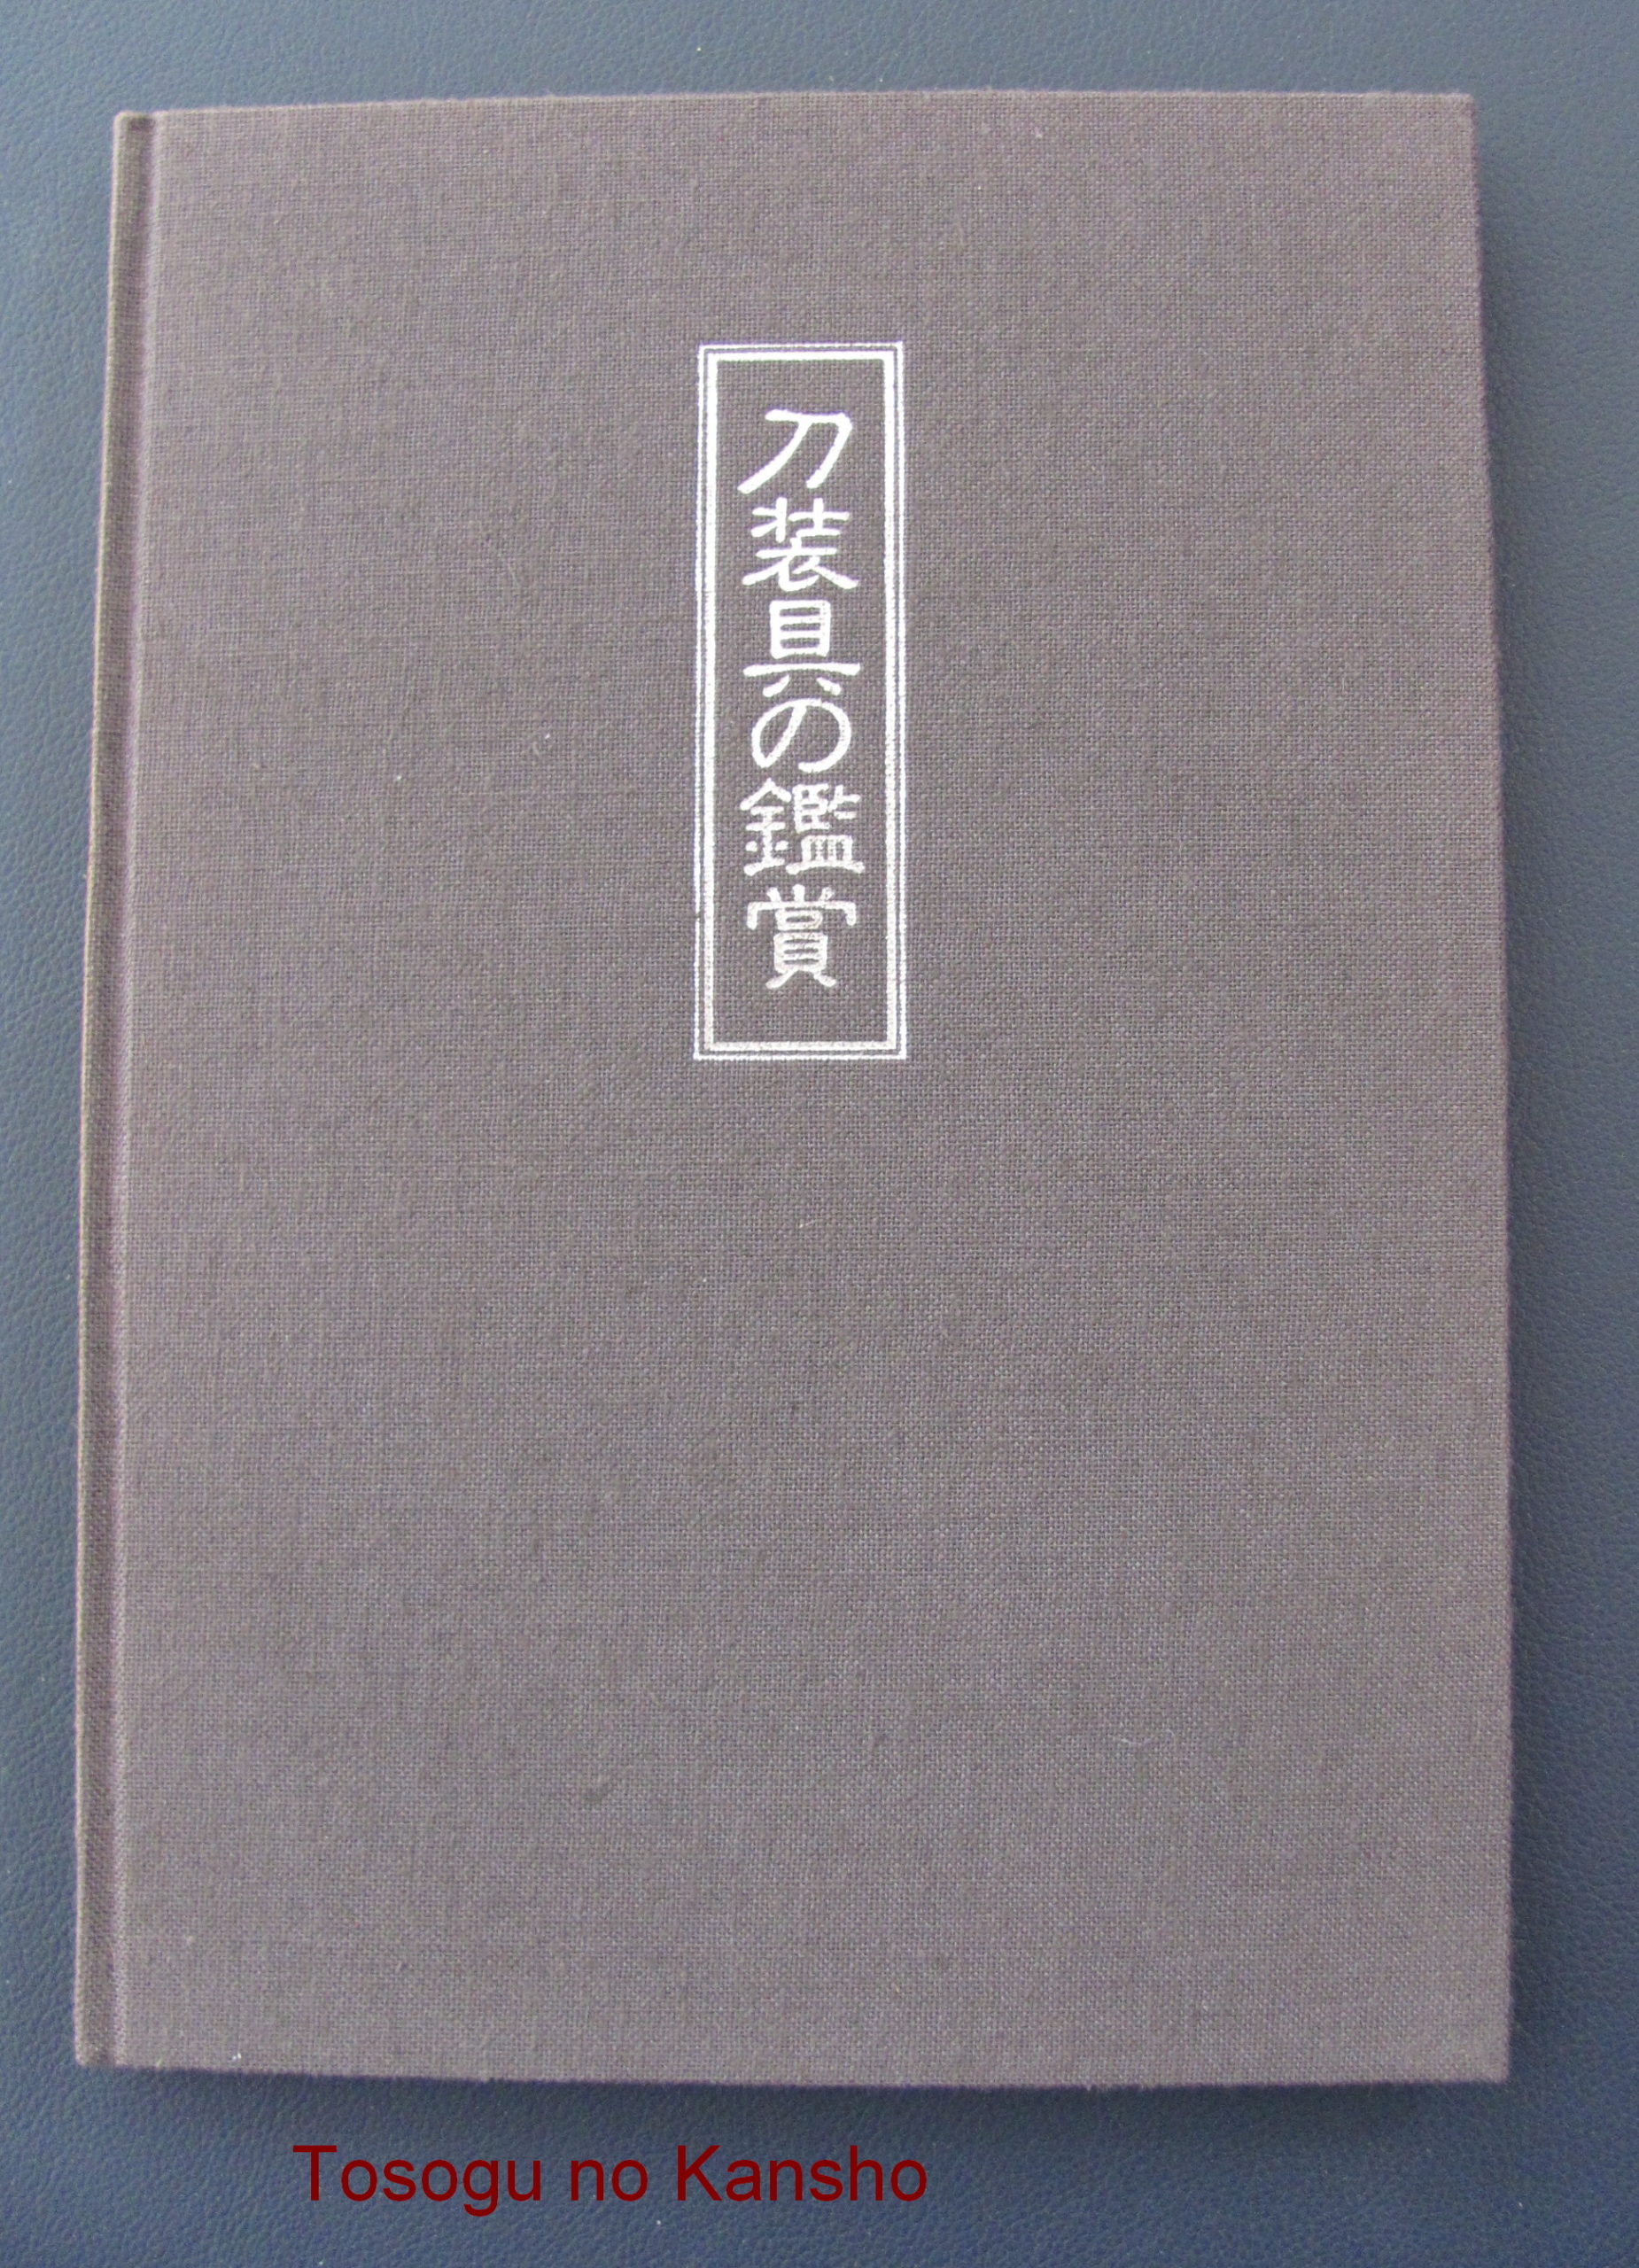 B1064. Tosogu no Kansho and Rare Volume II